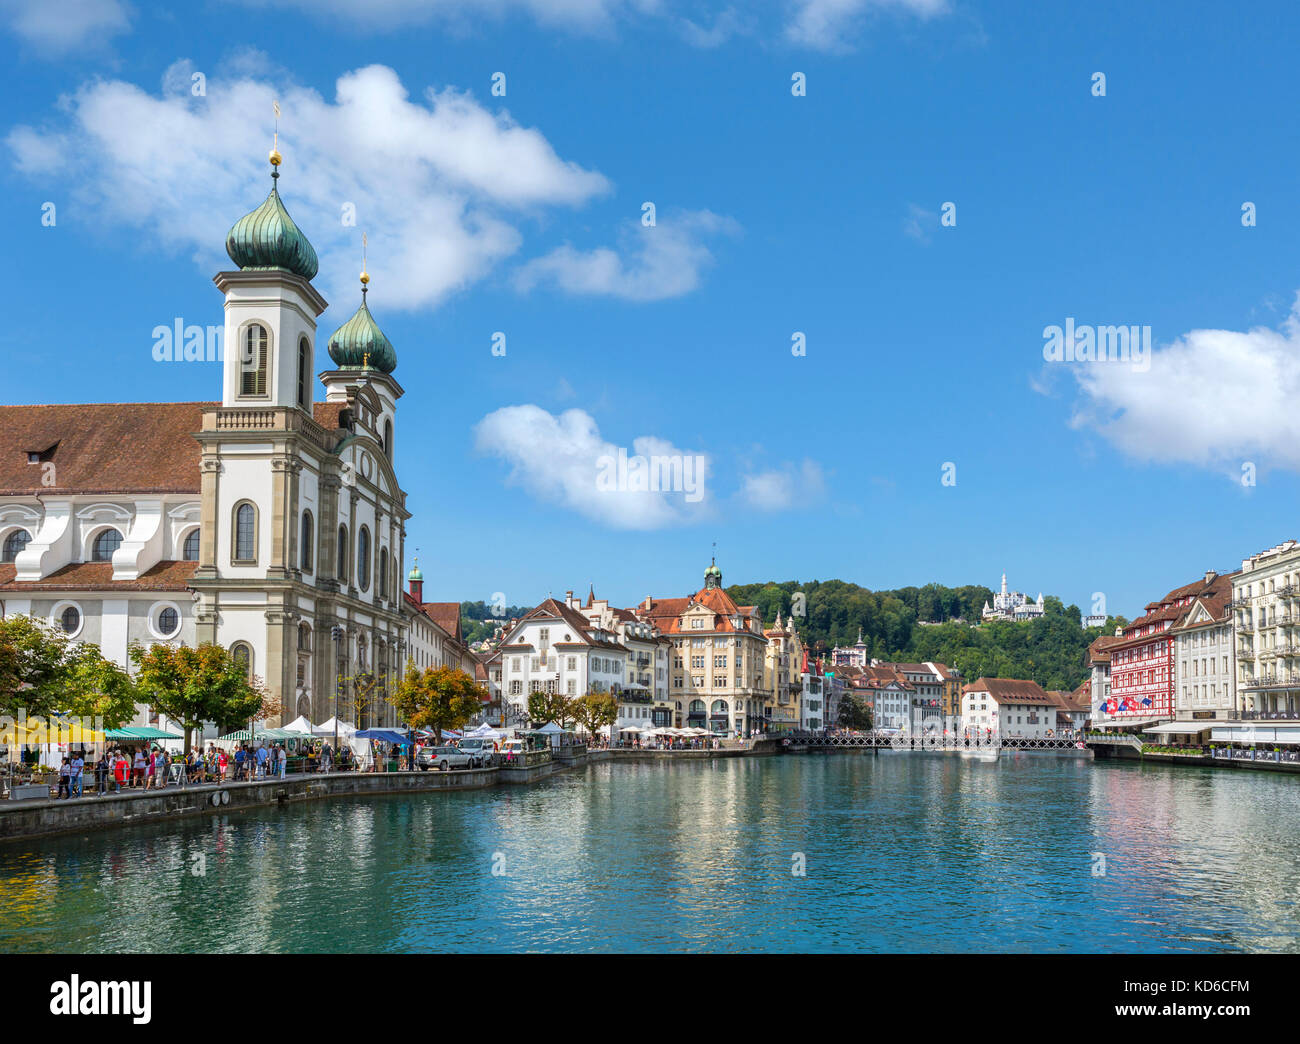 Blick auf die Altstadt und den Fluss Reuss vom Rathaussteg, mit der Jesuitenkirche auf der linken Seite, Luzern (Luzern), Vierwaldstättersee, Schweiz Stockfoto